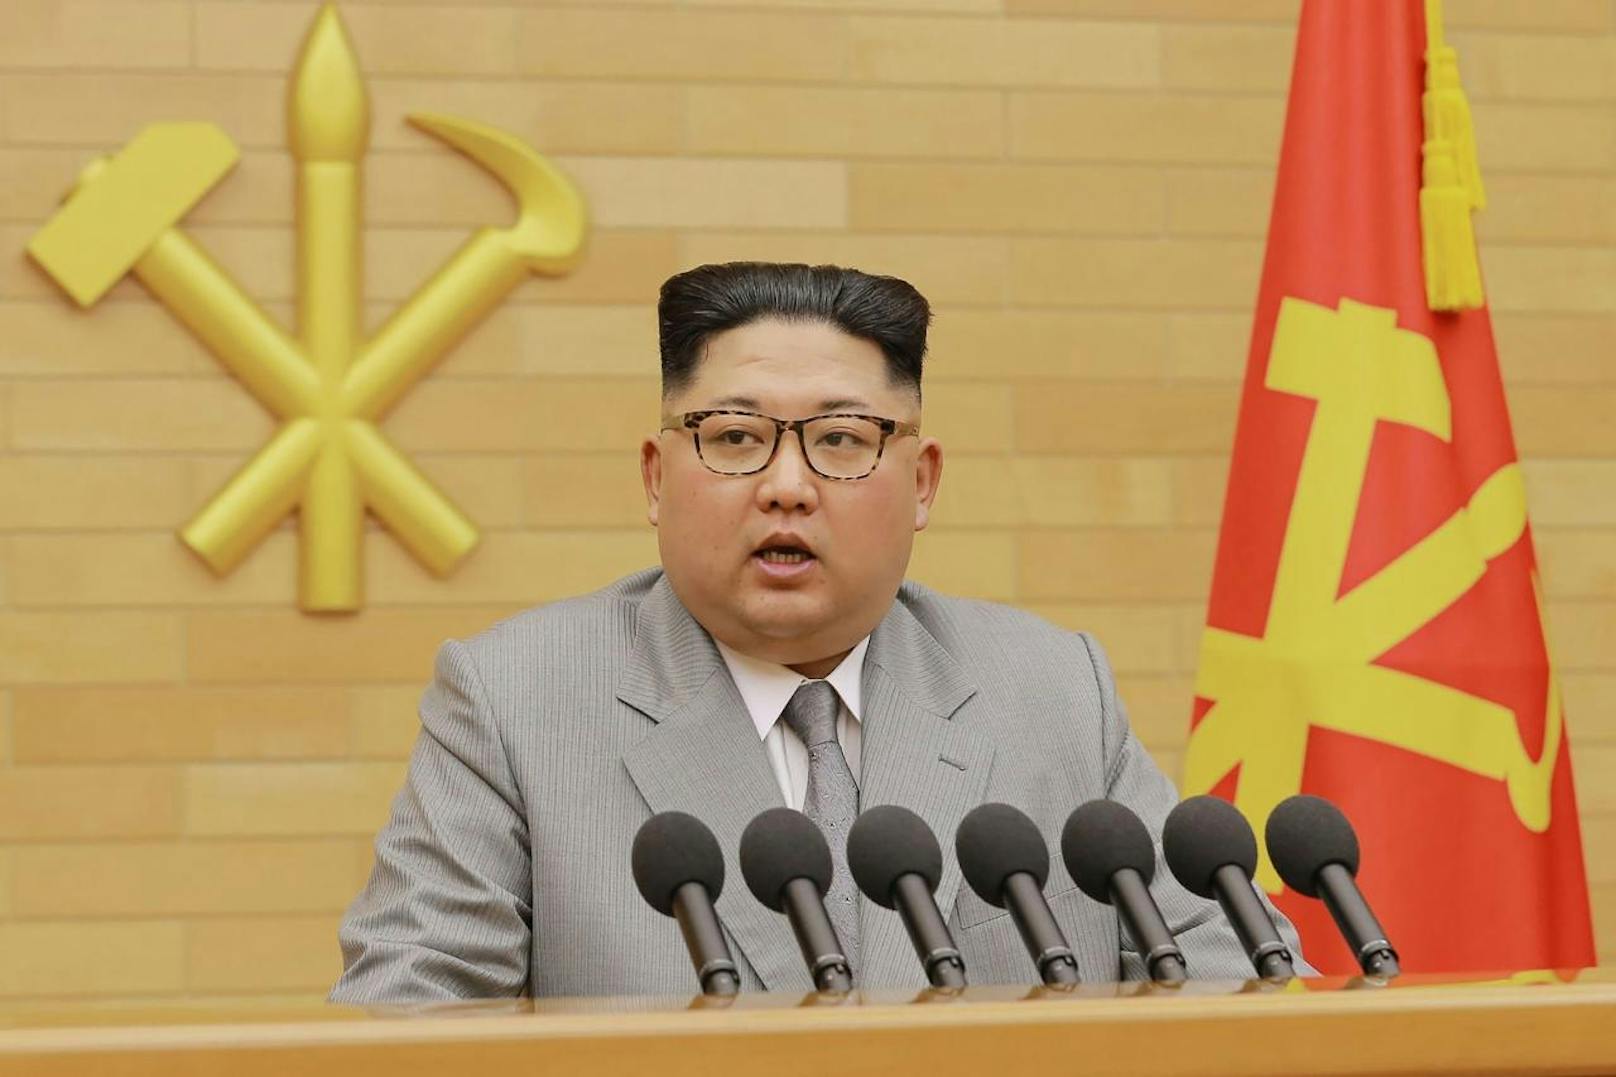 Diktator <a target="_blank" data-li-document-ref="100128402" href="https://www.heute.at/s/kim-jong-un-und-ehefrau-feiern-den-geburtstag-von-kim-jong-il-100128402">Kim Jong-un</a> steht erneut in der Kritik.